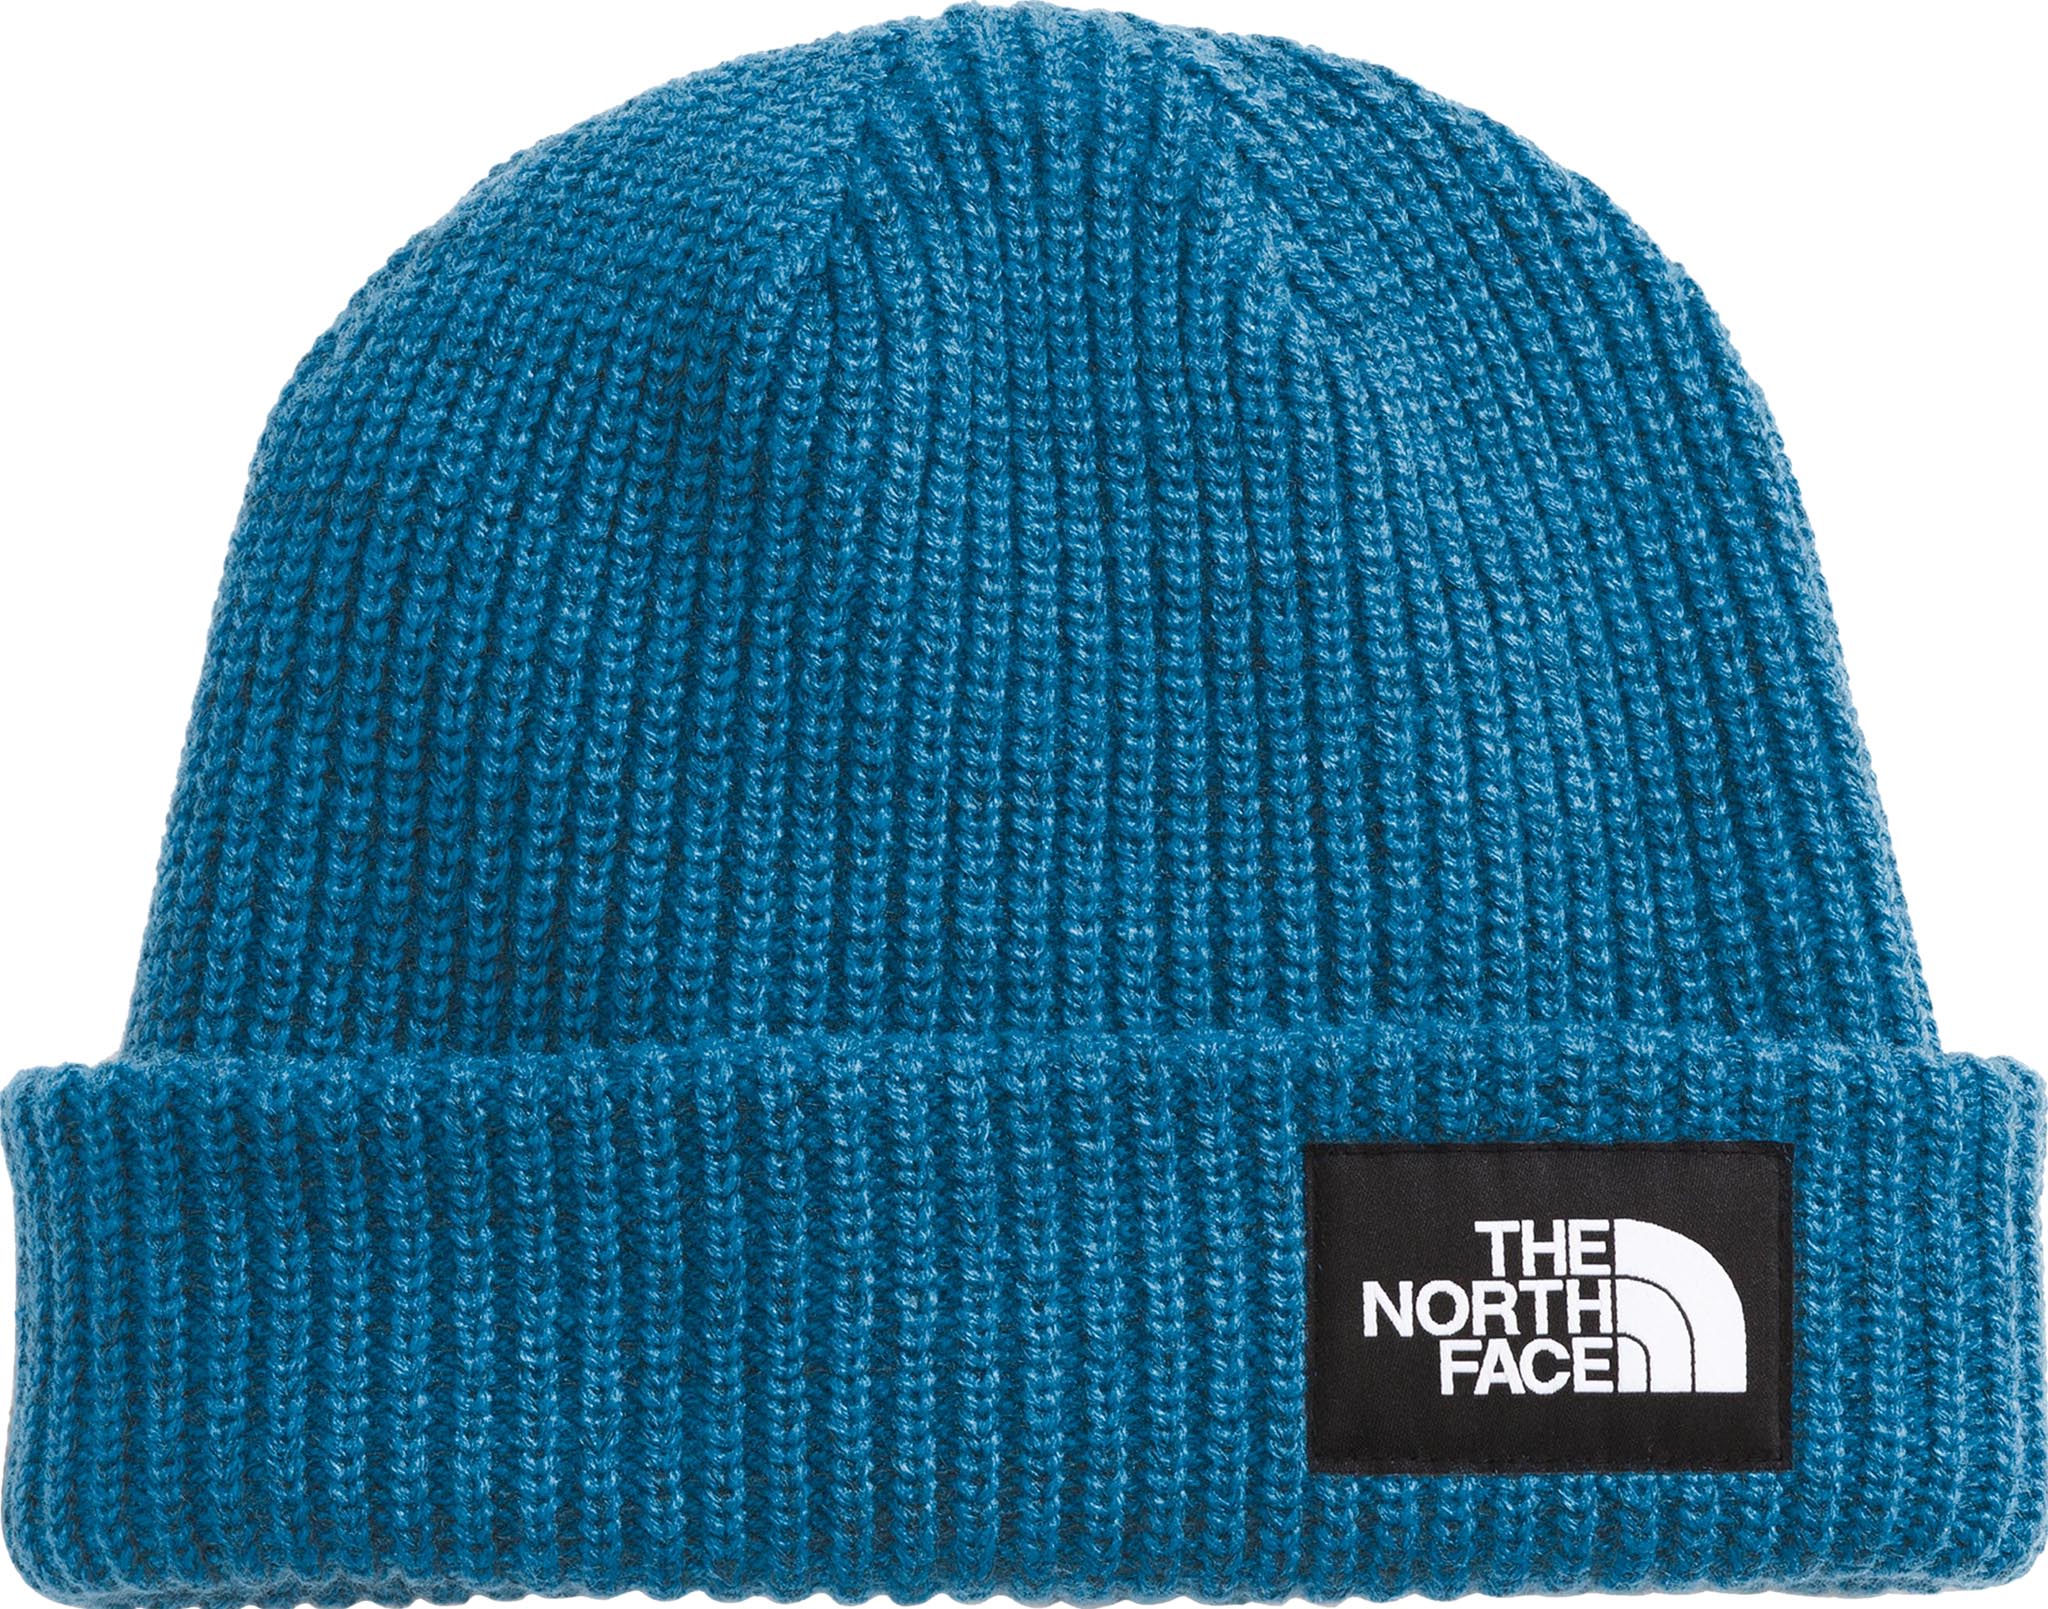 The North Face Bonnet - Salty Lined Beanie (Bleu) - Bonnets chez